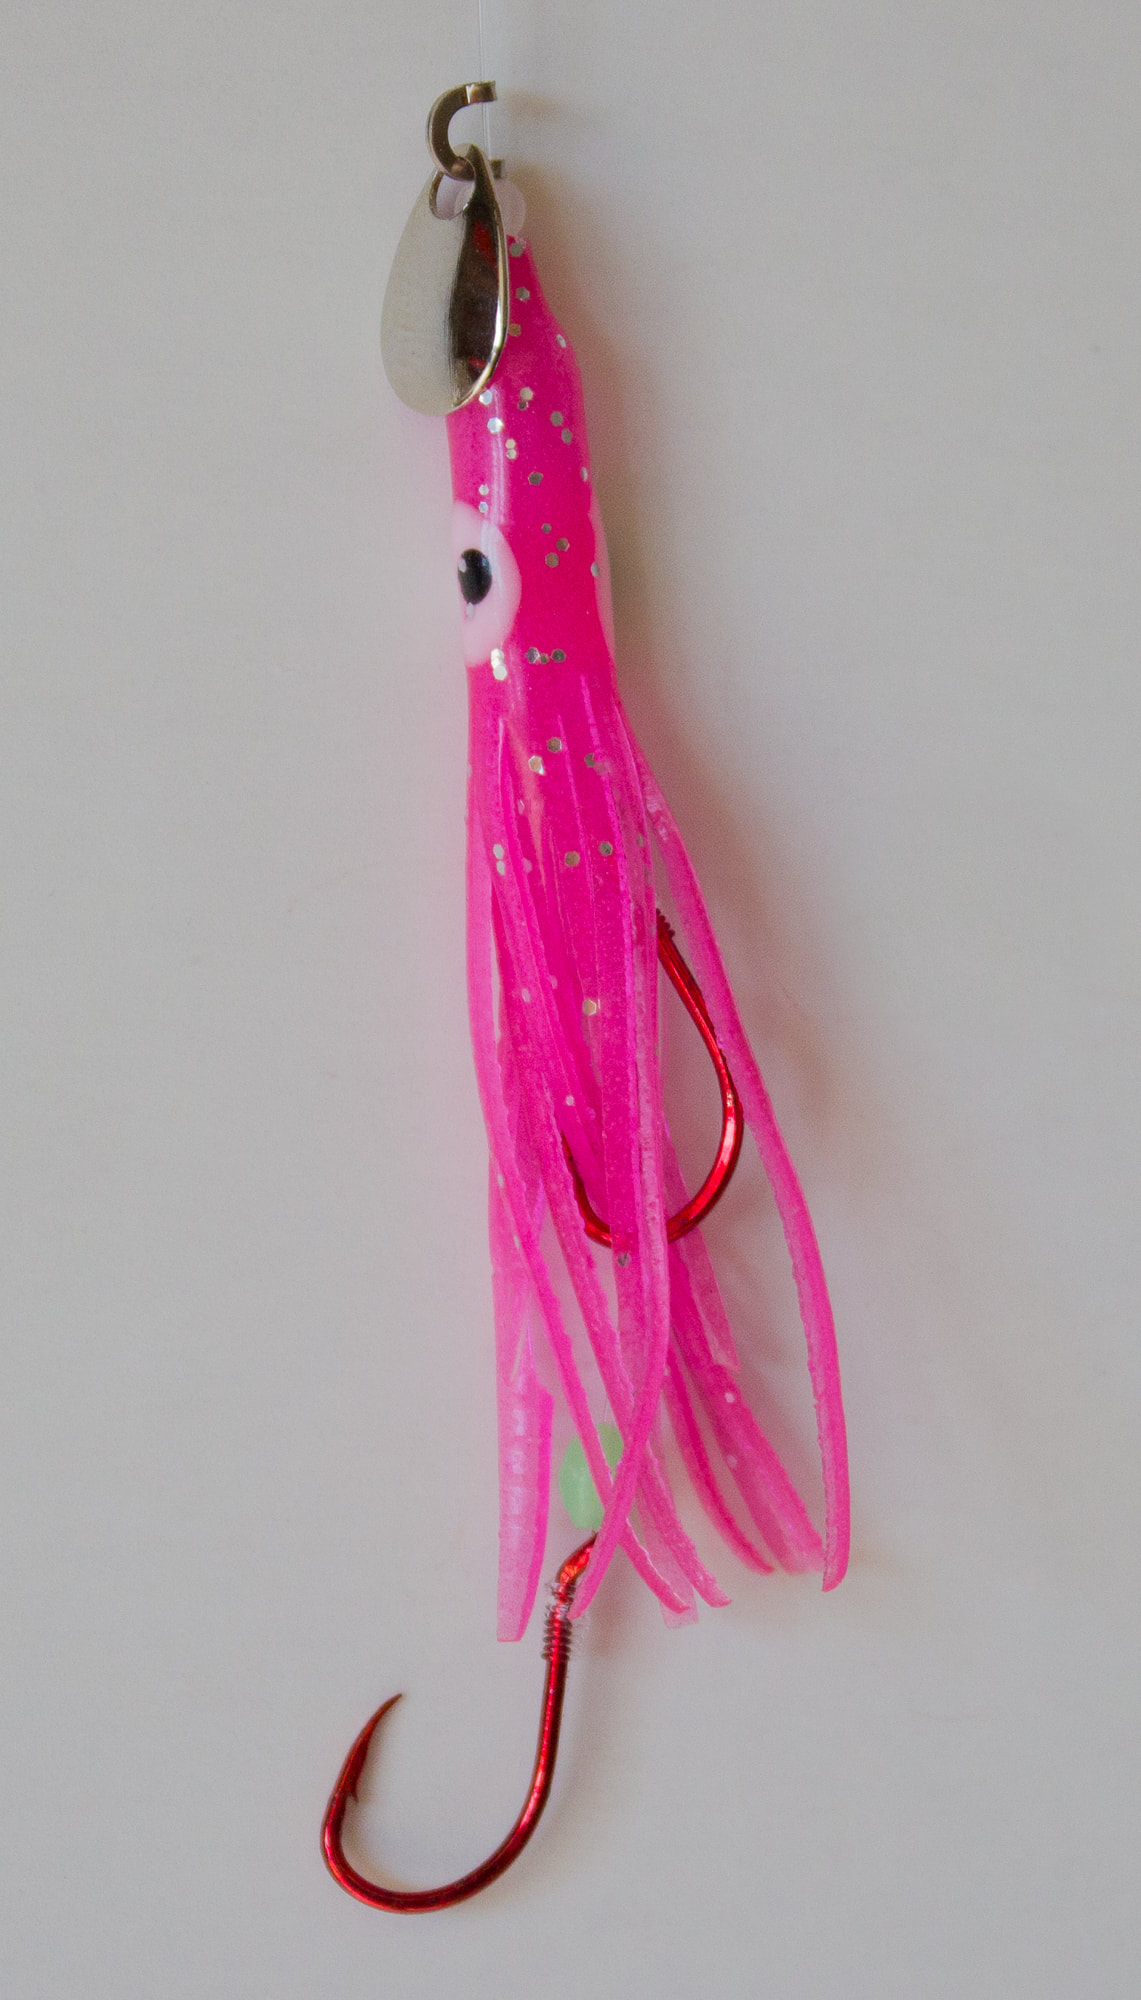 MACK'S Pee Wee Wiggle Hoochie UV Pink (40558)